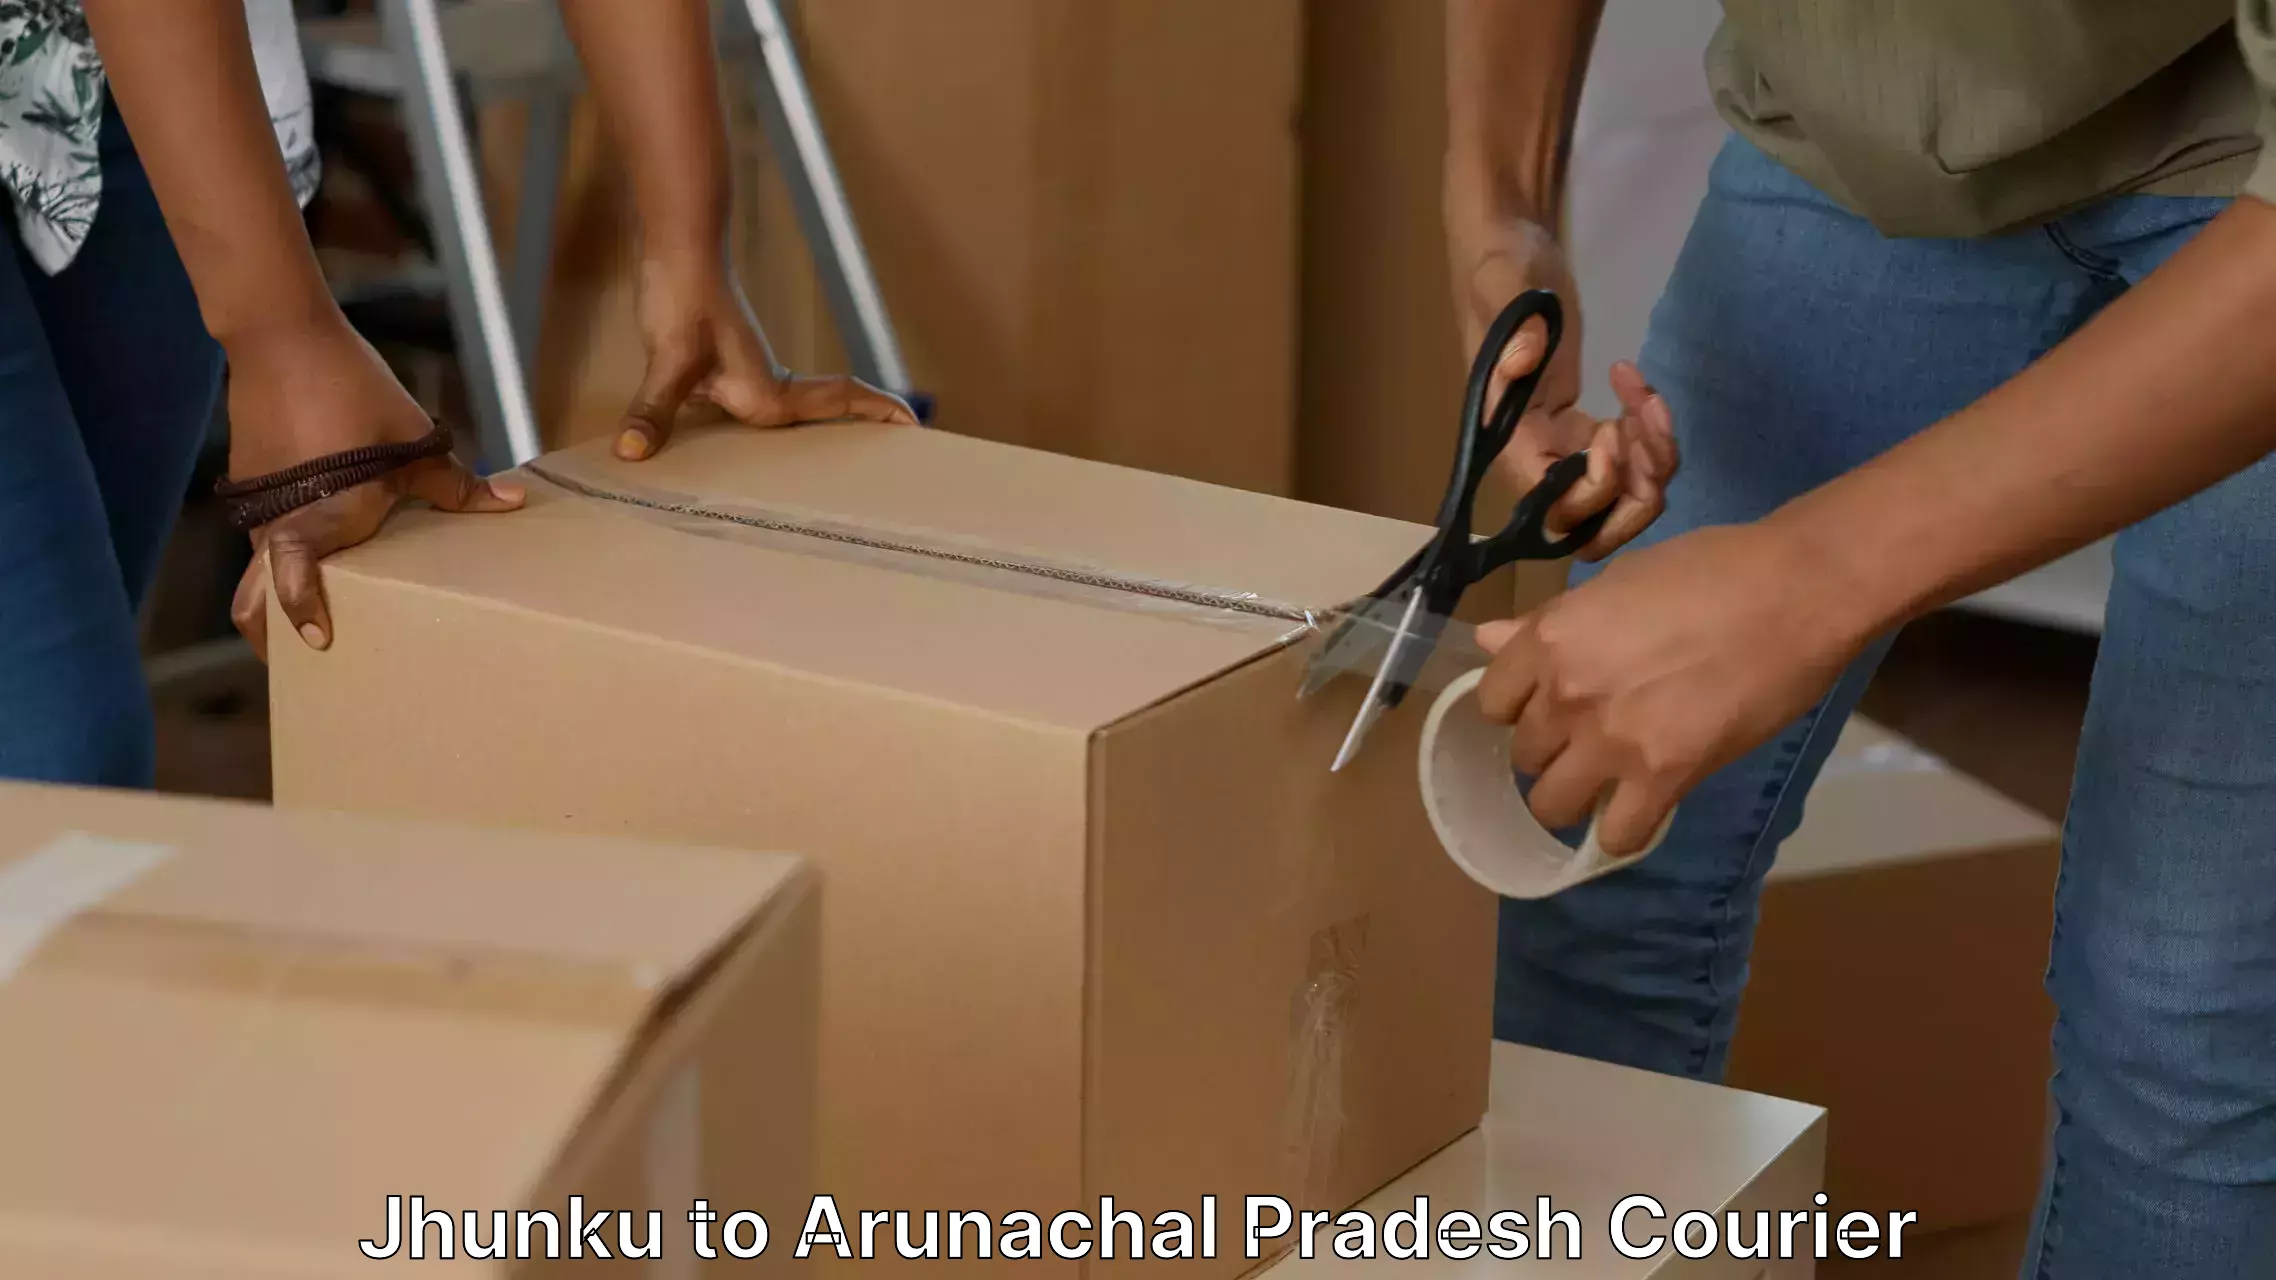 Customized moving experience Jhunku to Arunachal Pradesh